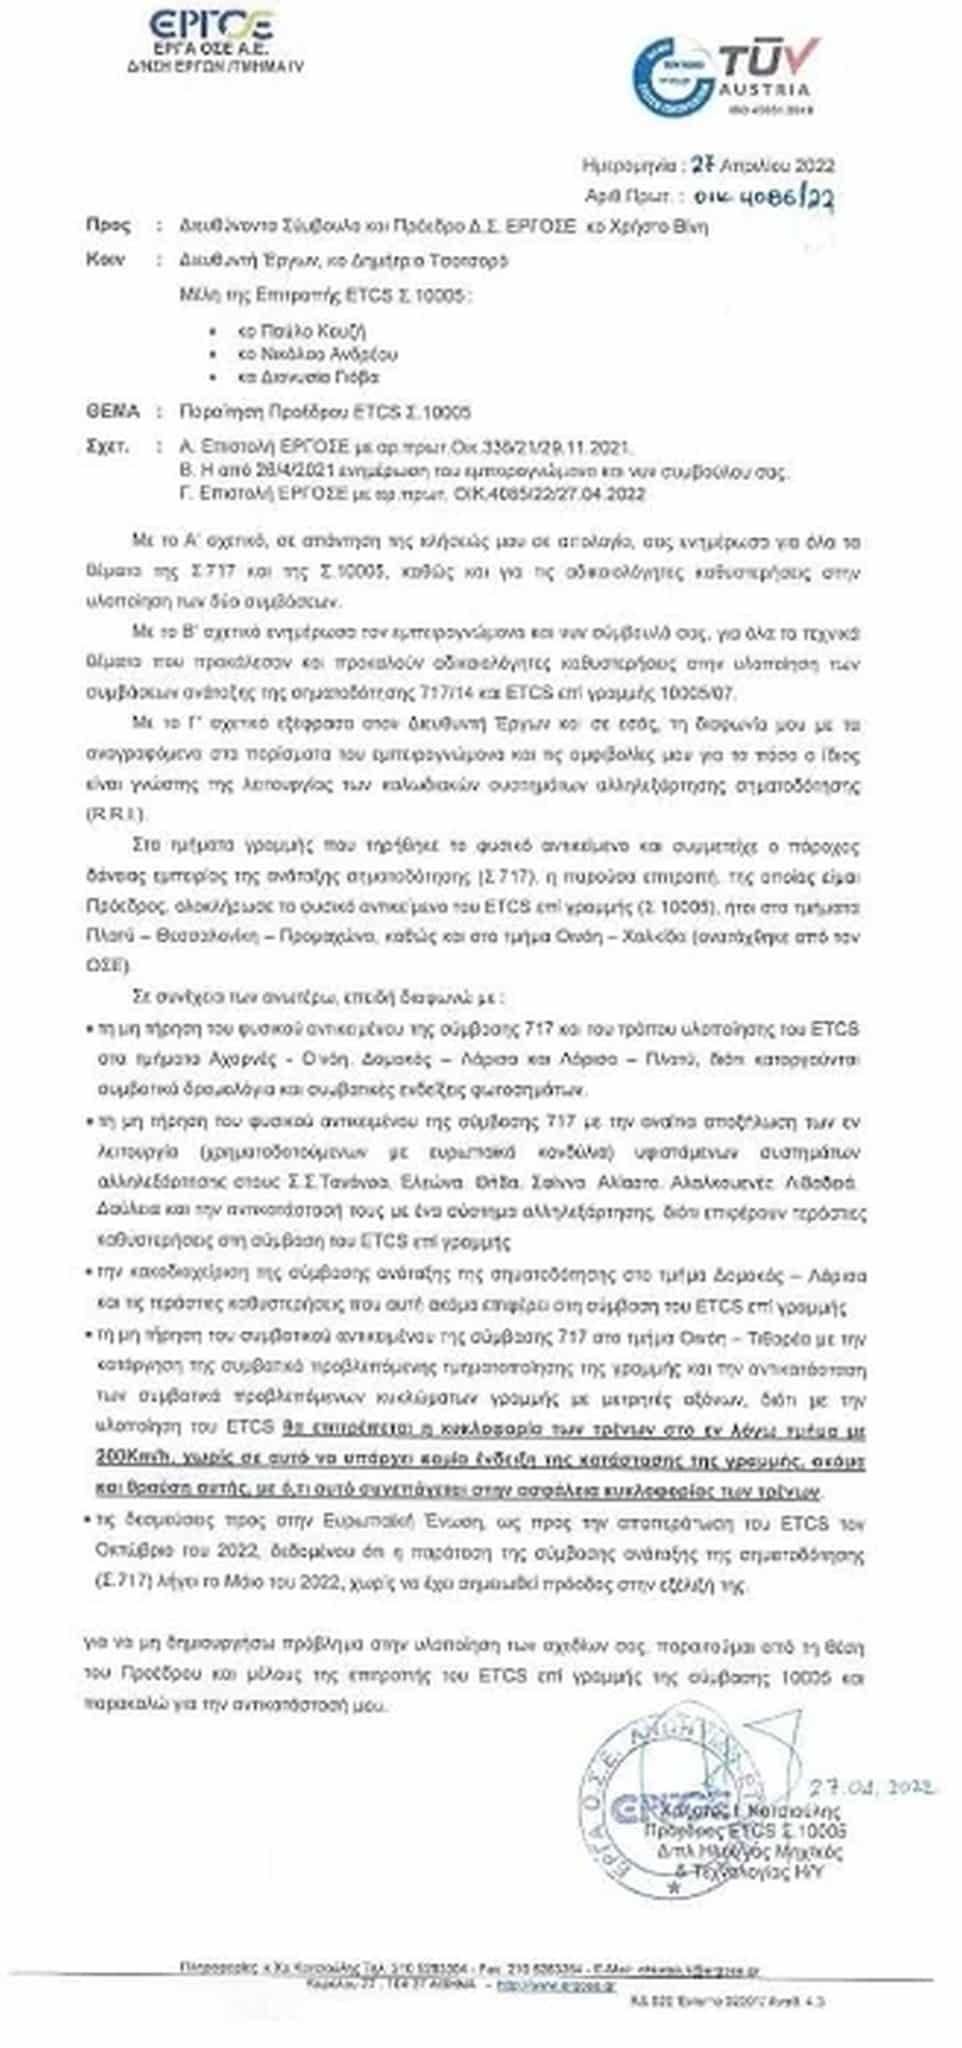 Η επιστολή στελέχους της ΕΡΓΟΣΕ με την οποία υπέβαλε την παραίτησή του